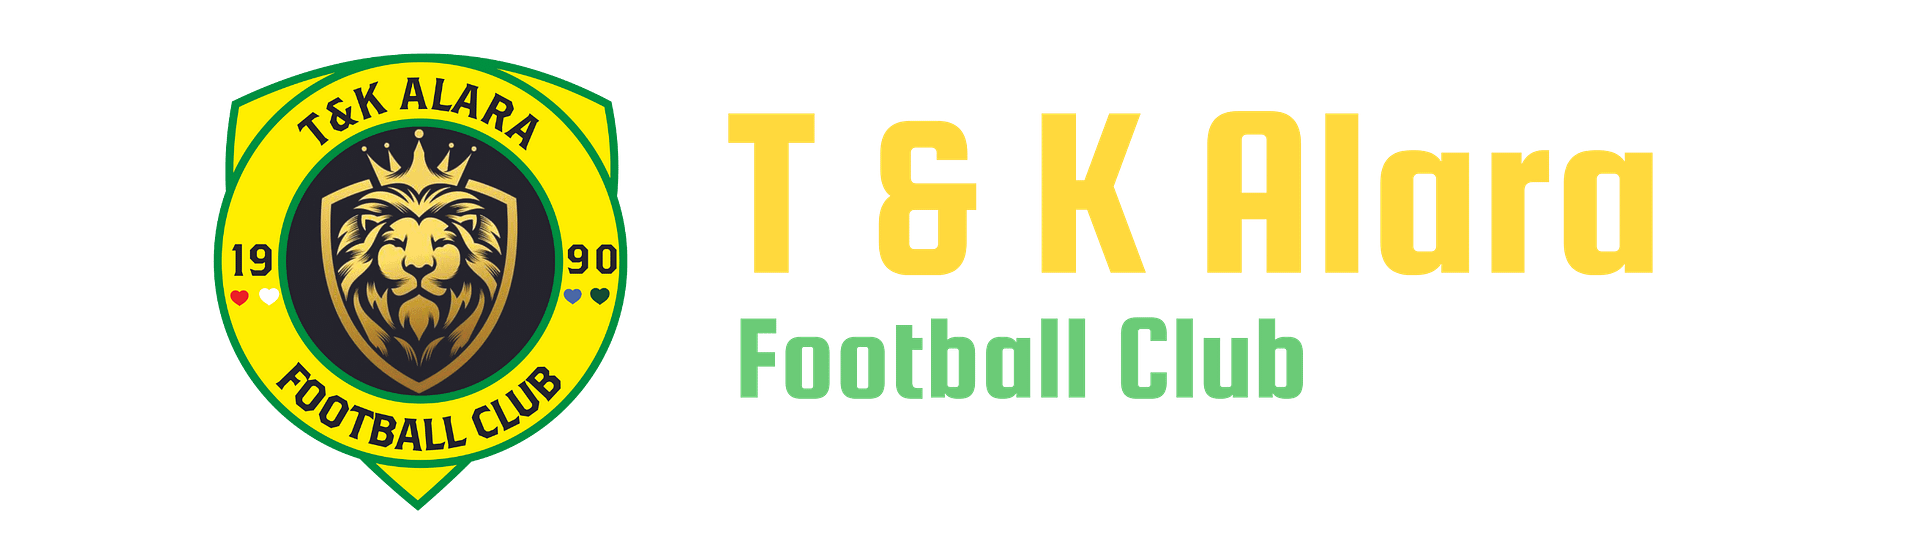 Official T & K Alara FC Website